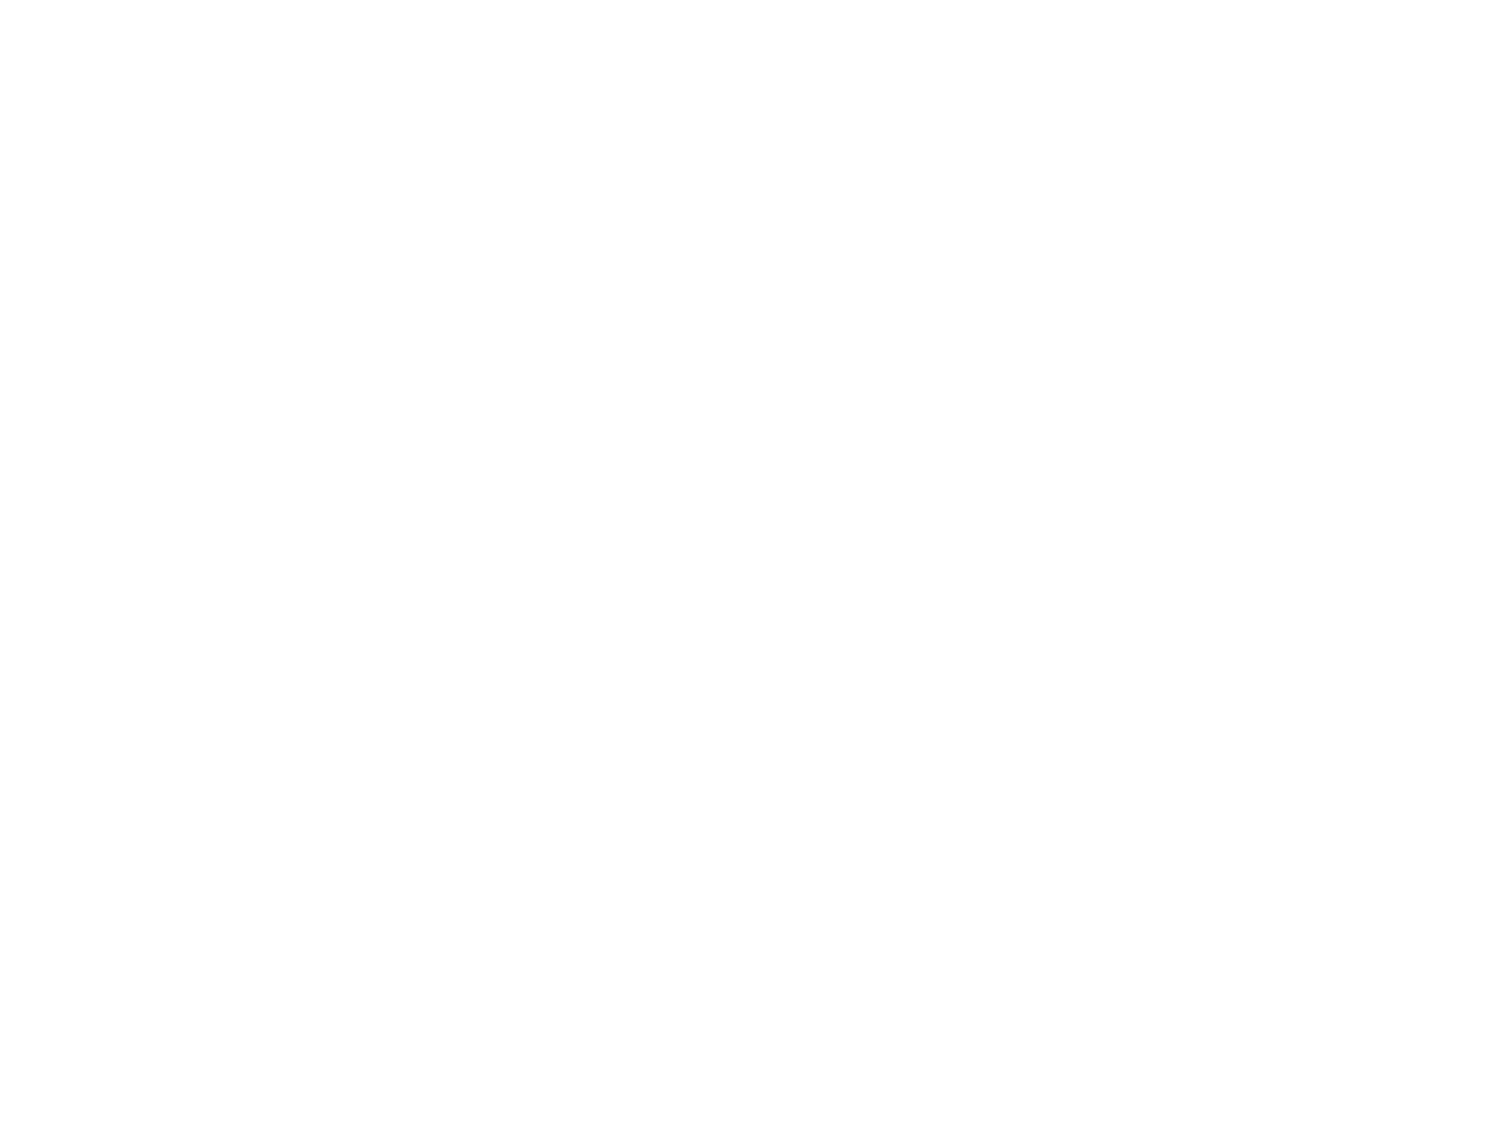 LOVE LOST